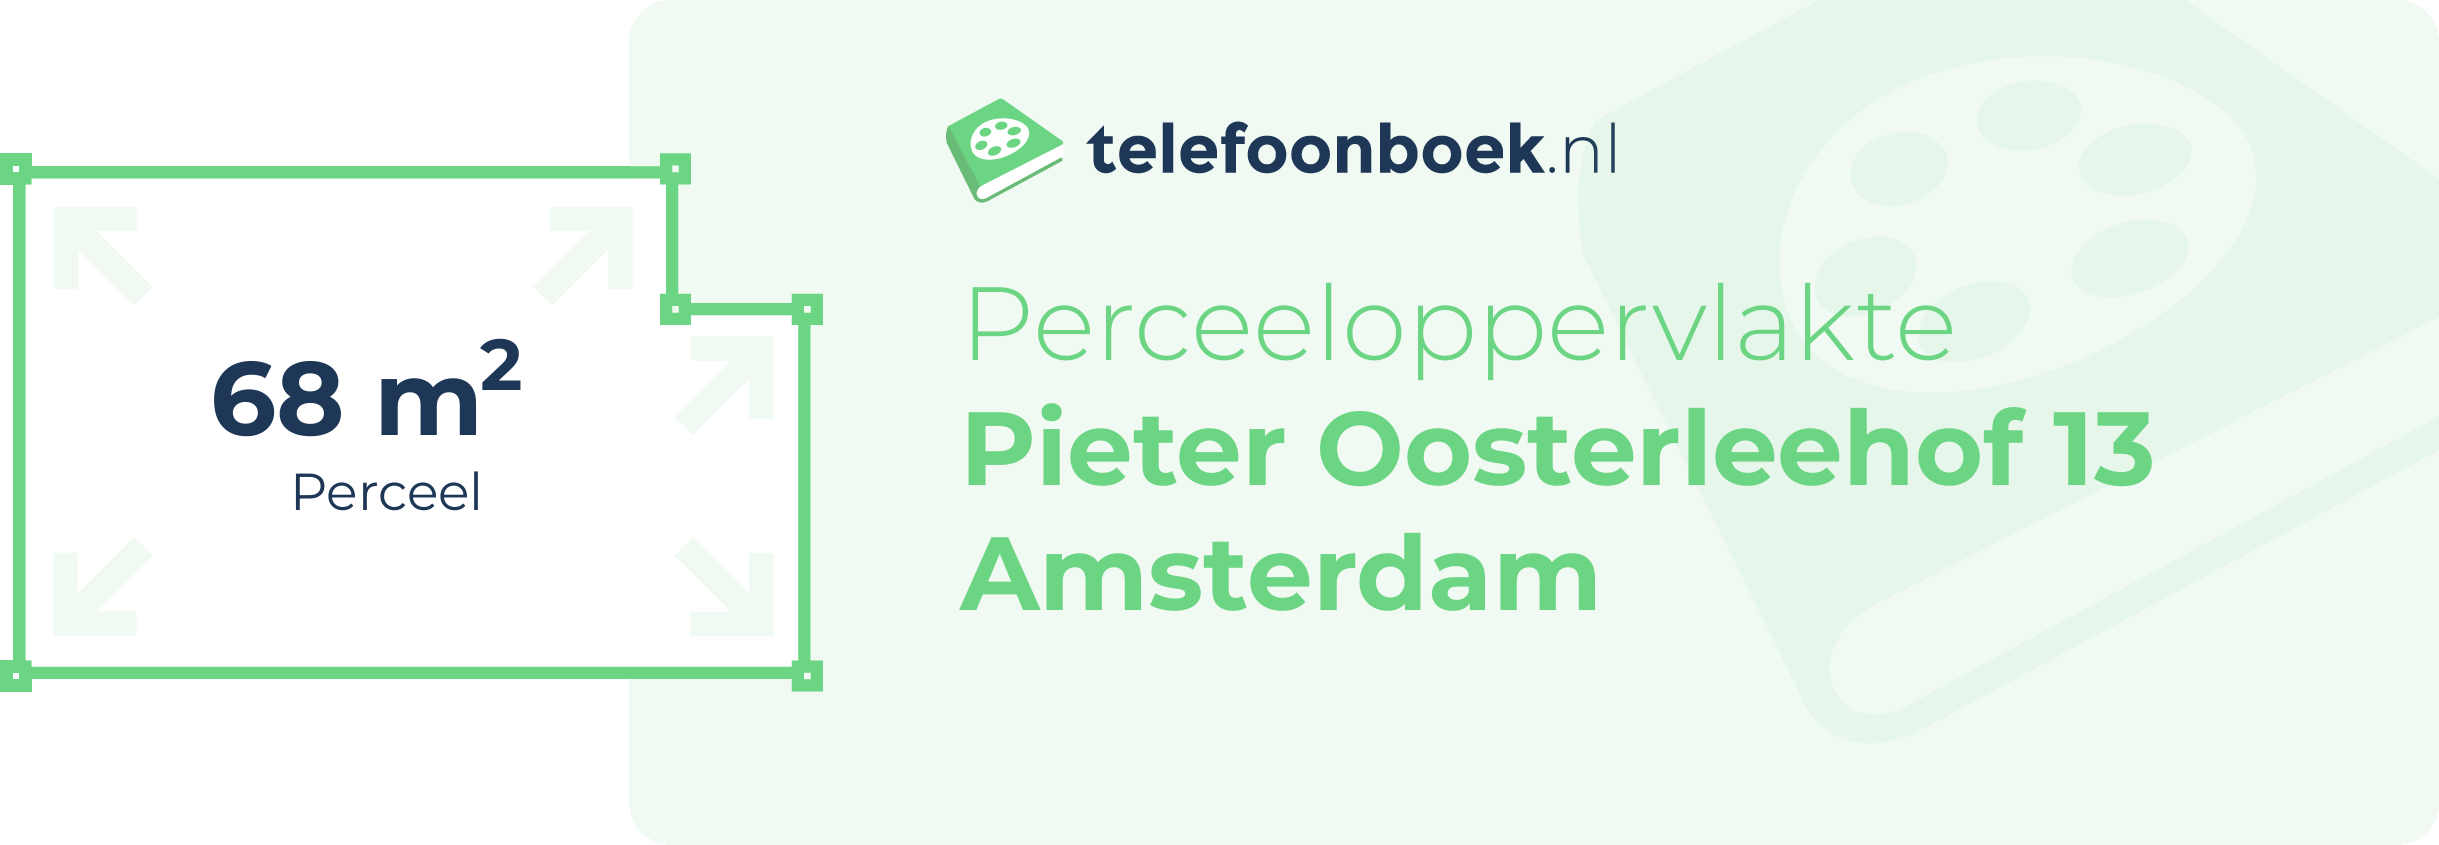 Perceeloppervlakte Pieter Oosterleehof 13 Amsterdam